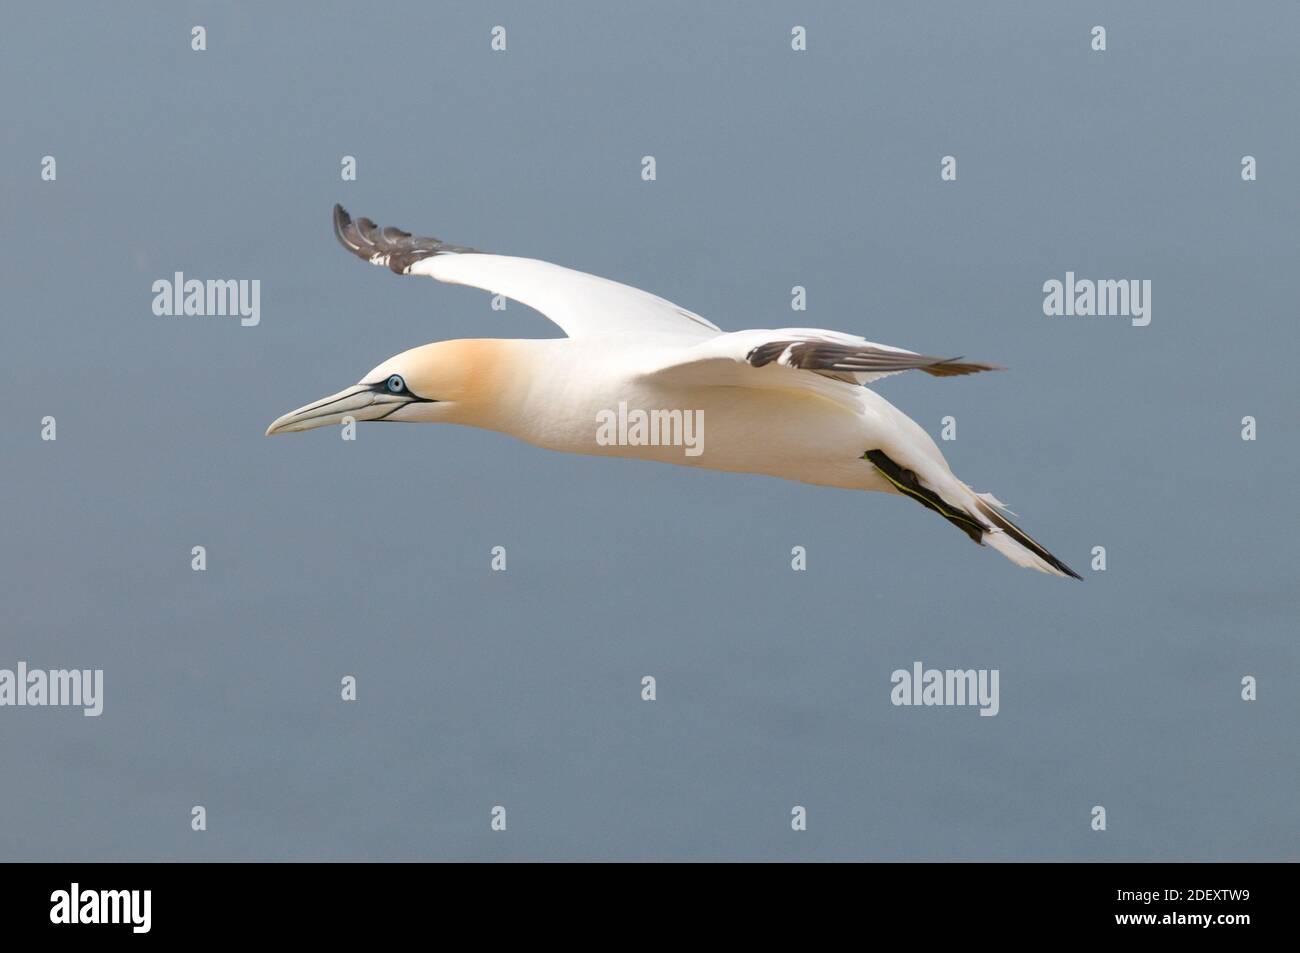 Gannet (Morus bassanus) flying portrait. Stock Photo